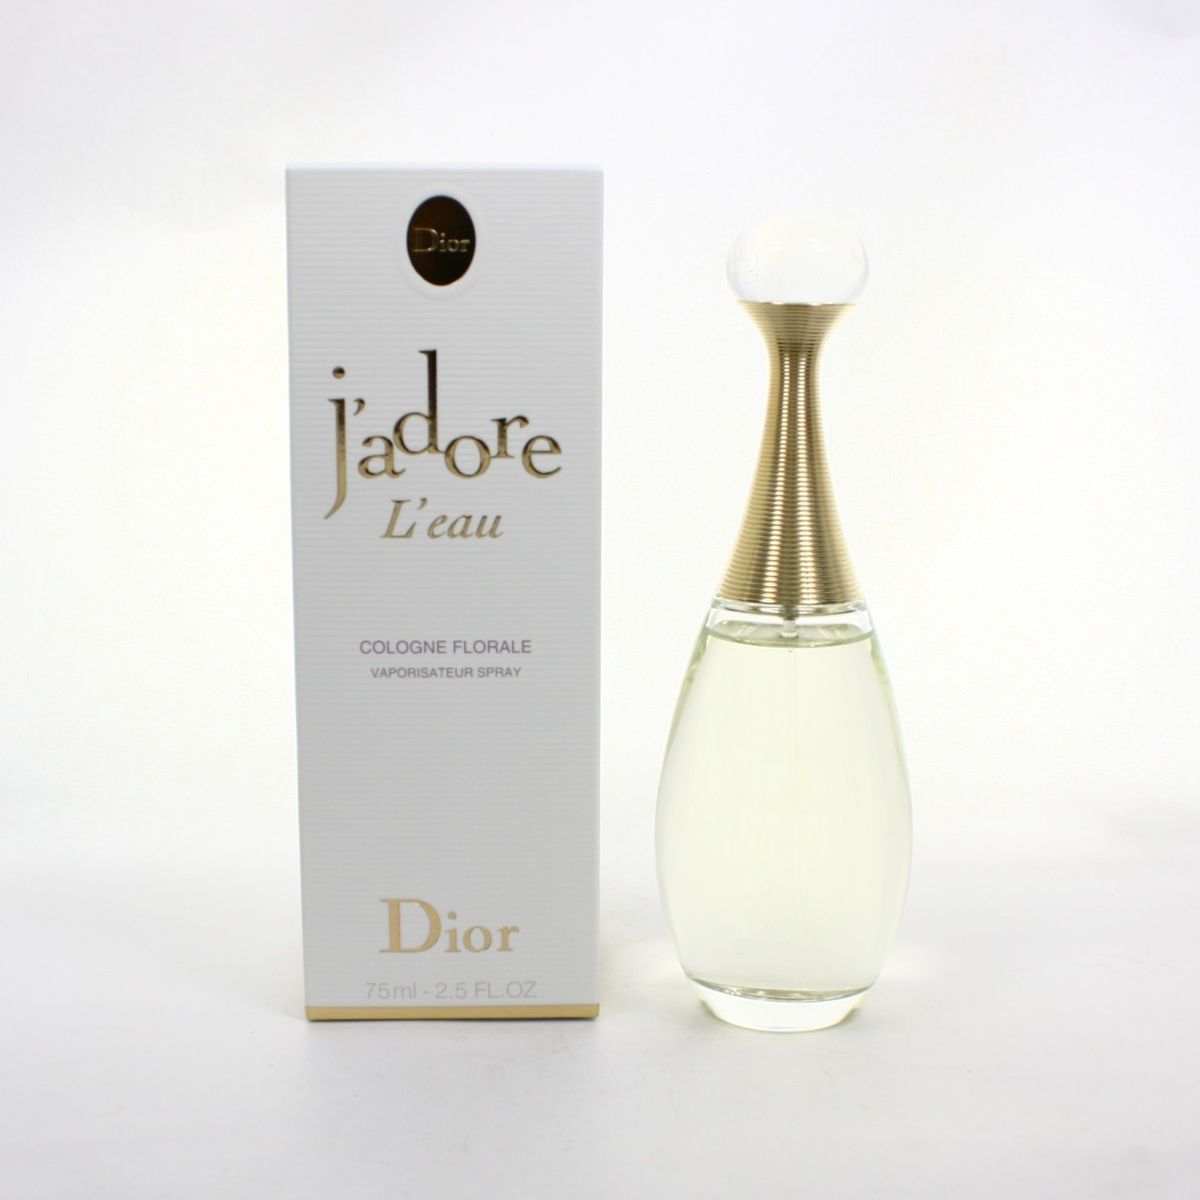 Christian Dior JAdore LEau Cologne Florale for Women 75ml 2 5oz